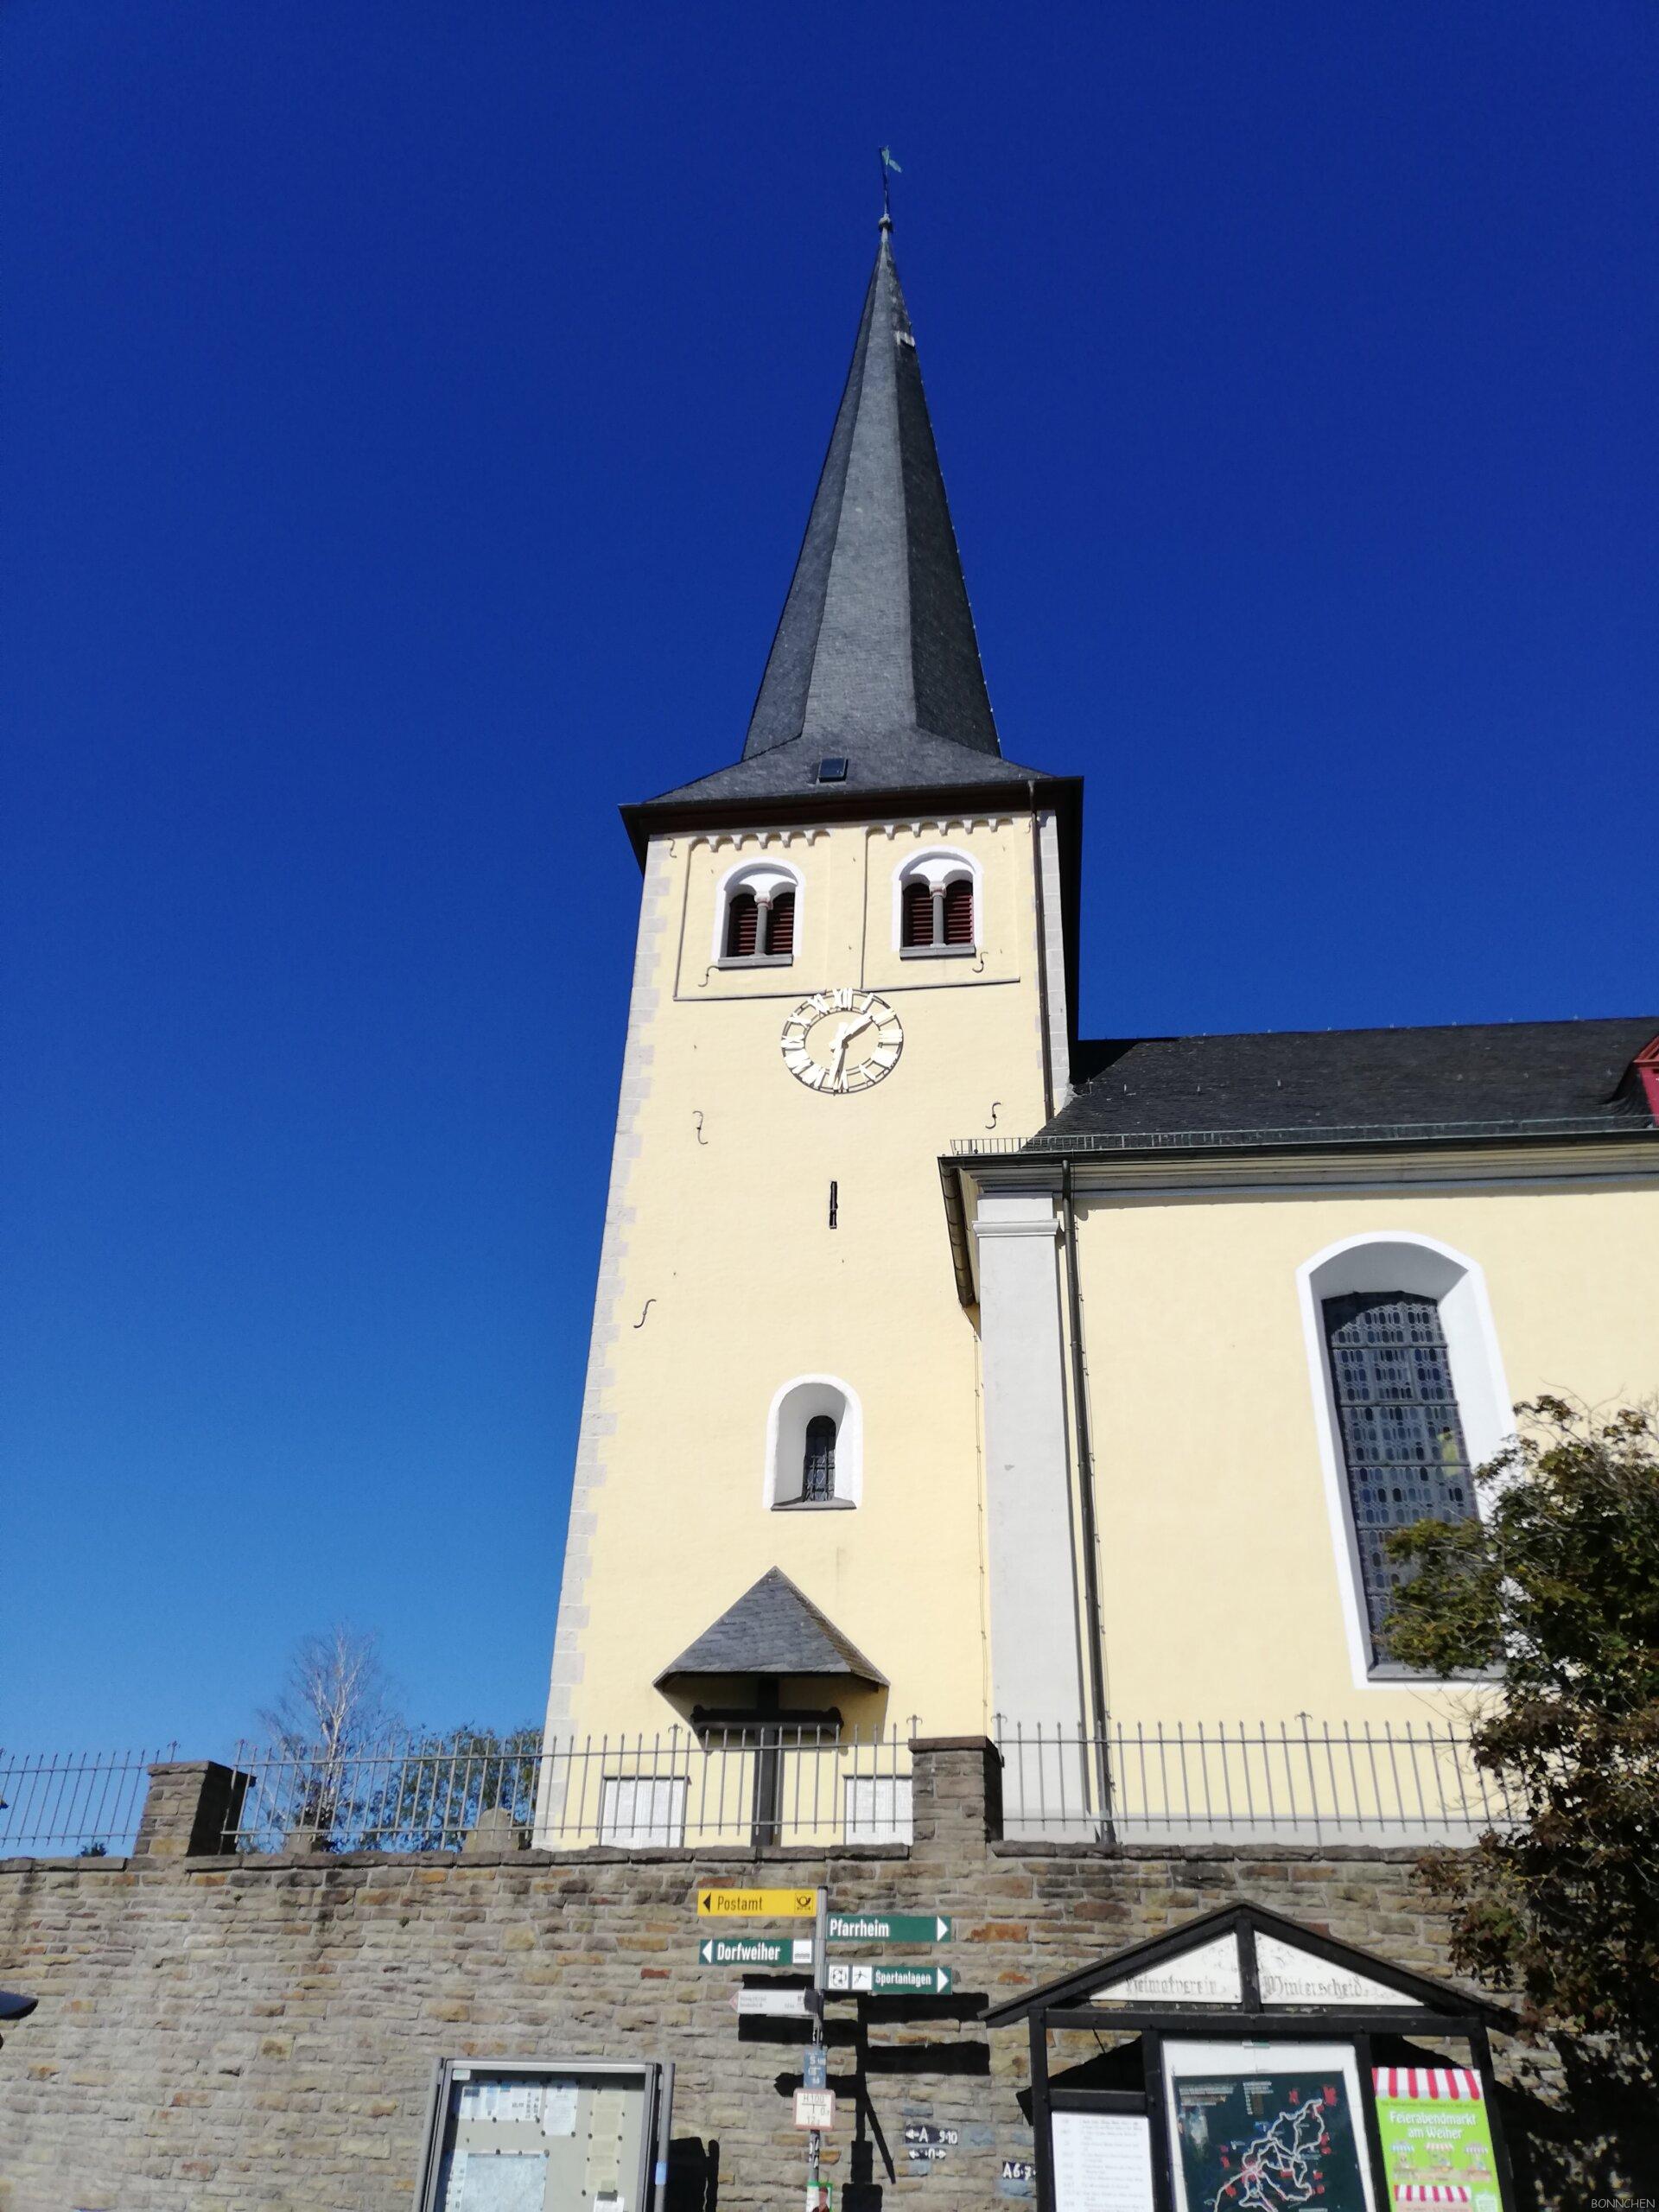  St. Servatius Kirche in Winterscheid